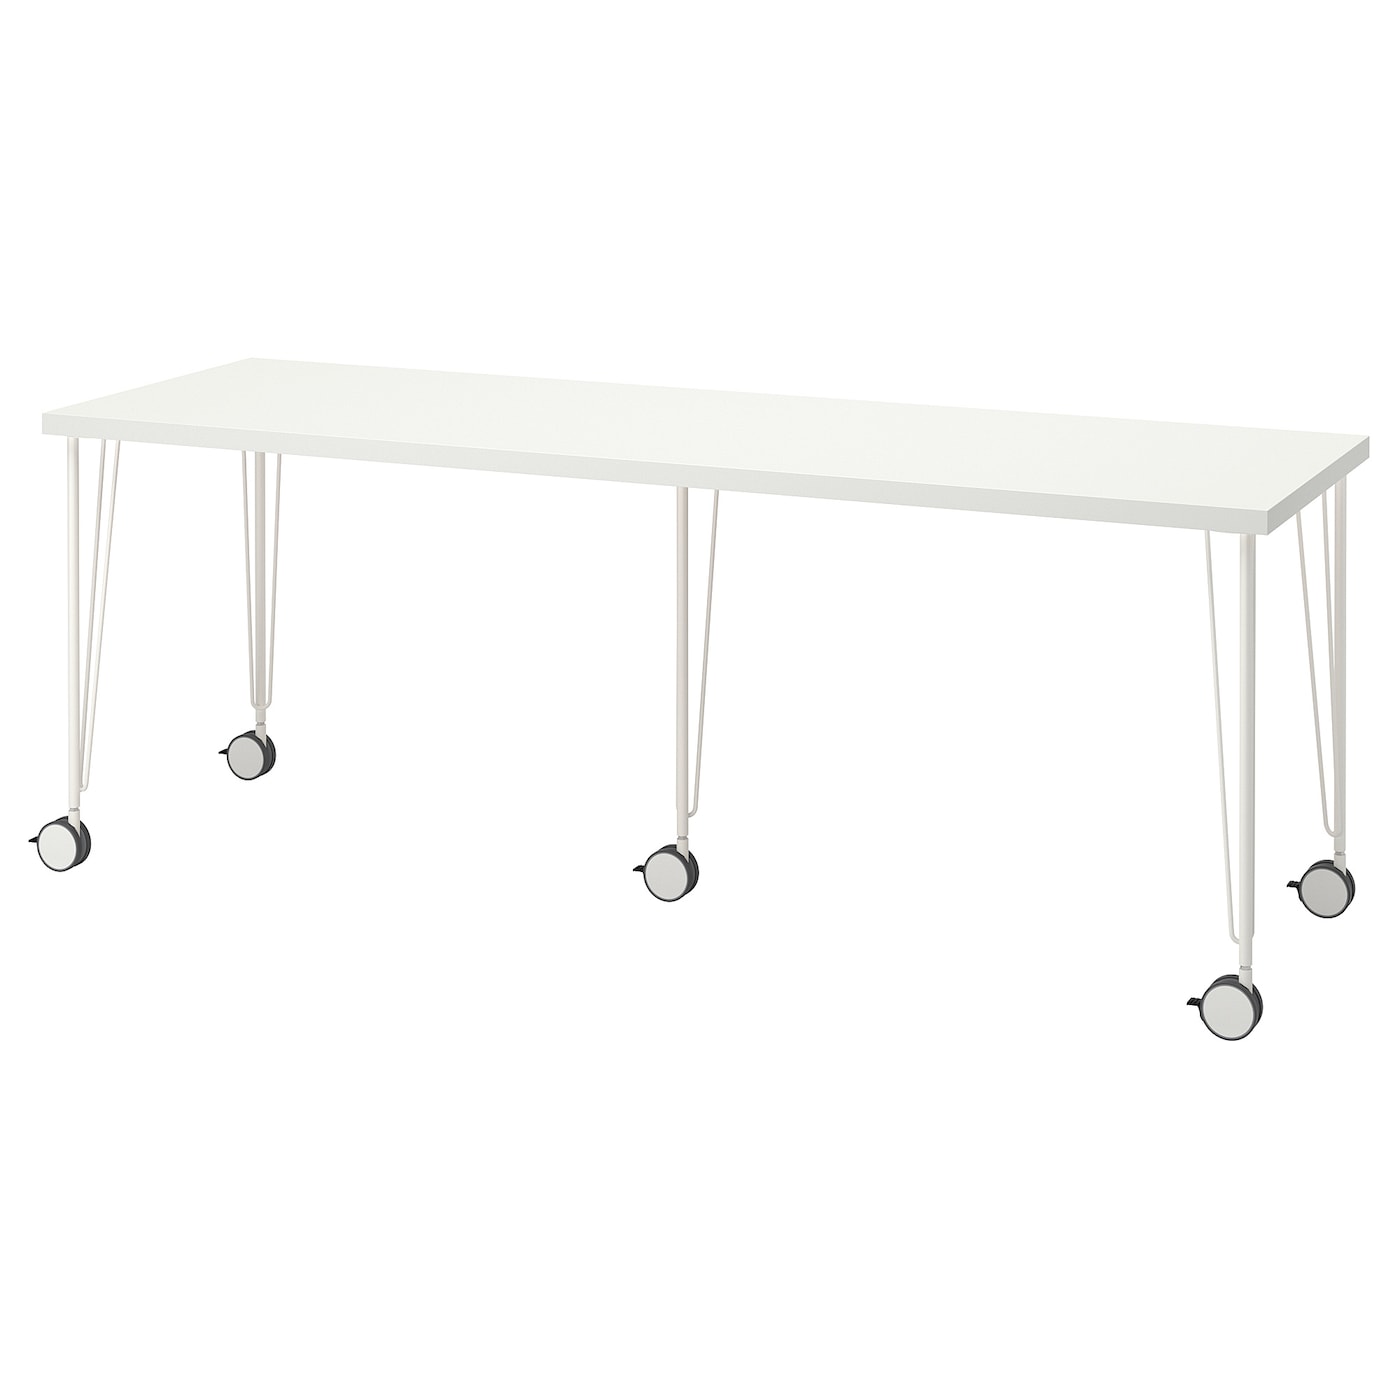 Письменный стол - IKEA LAGKAPTEN/KRILLE, 200х60 см, белый, ЛАГКАПТЕН/КРИЛЛЕ ИКЕА